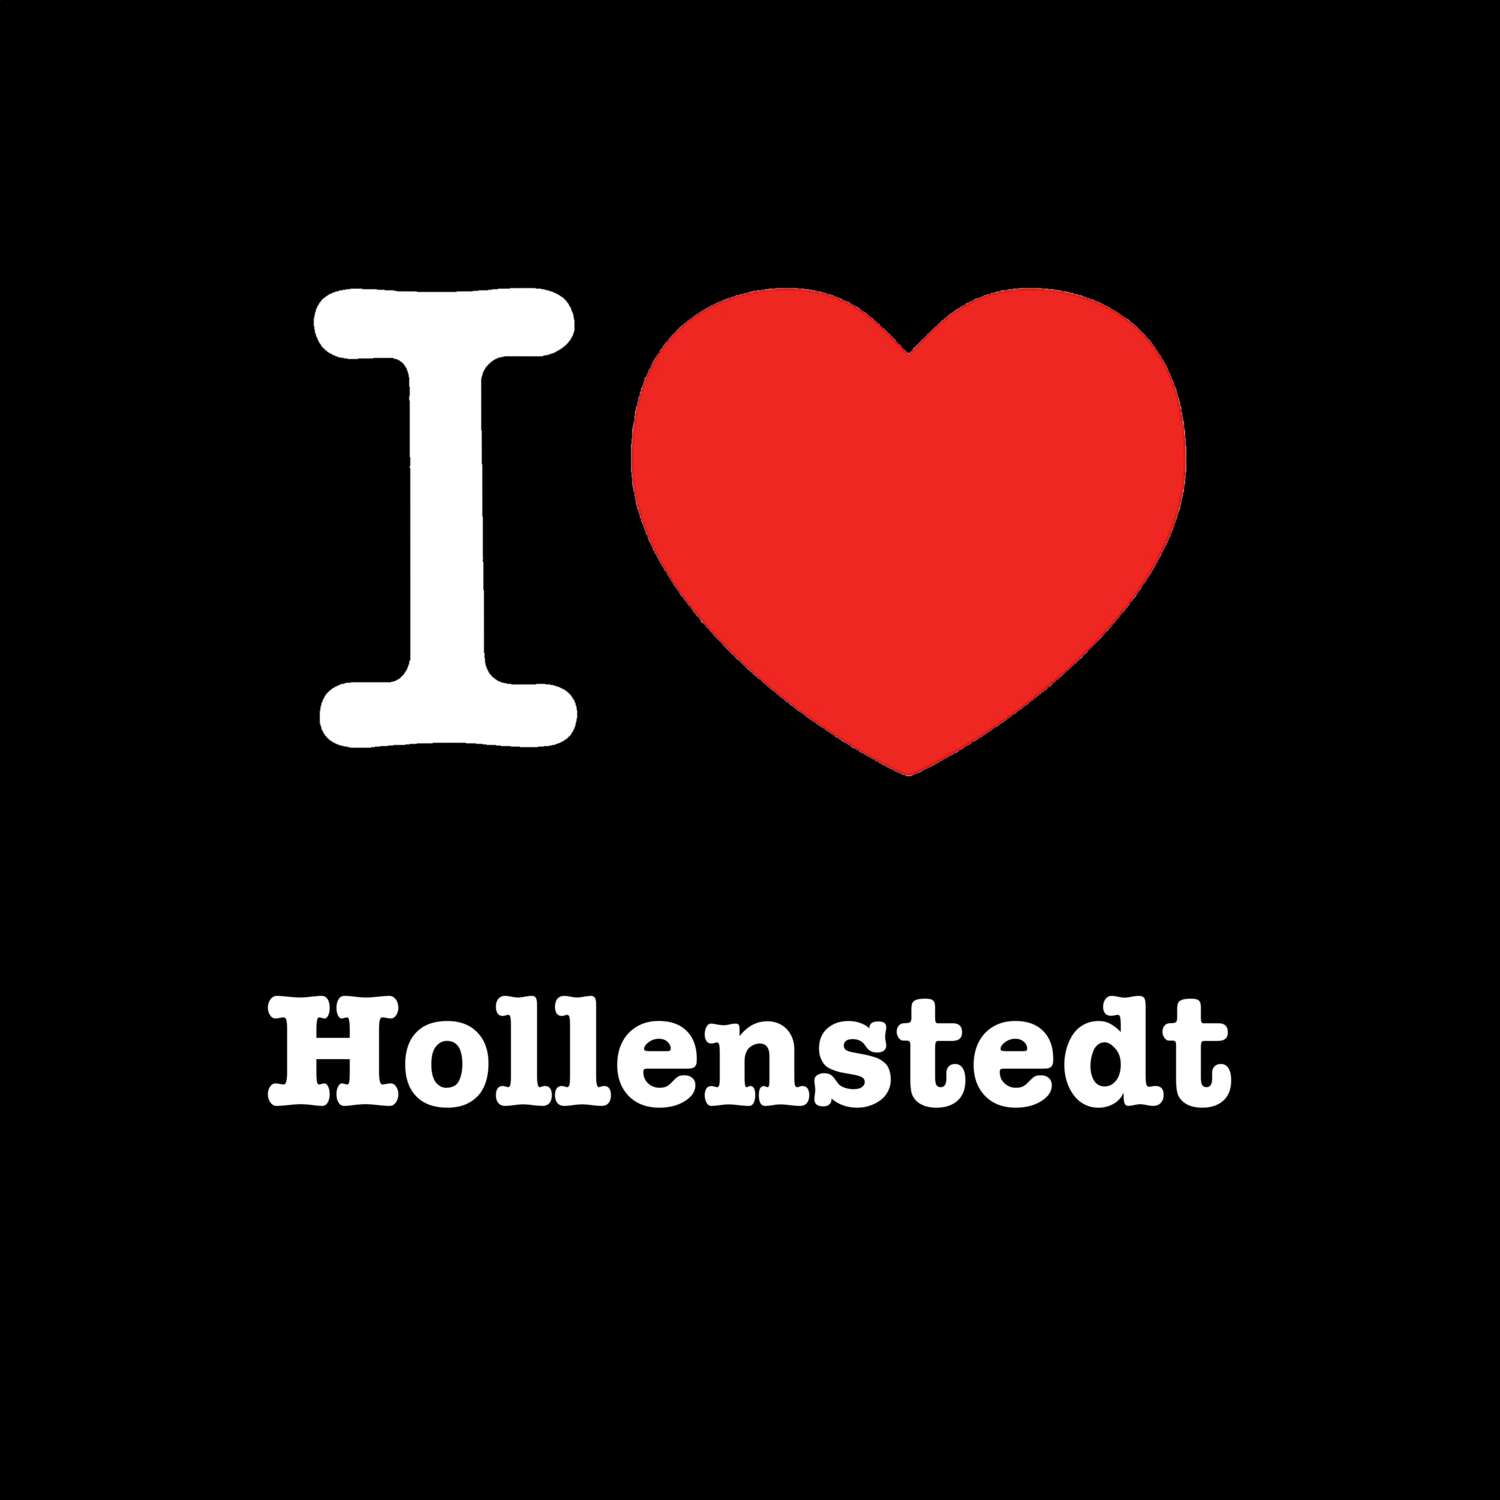 Hollenstedt T-Shirt »I love«